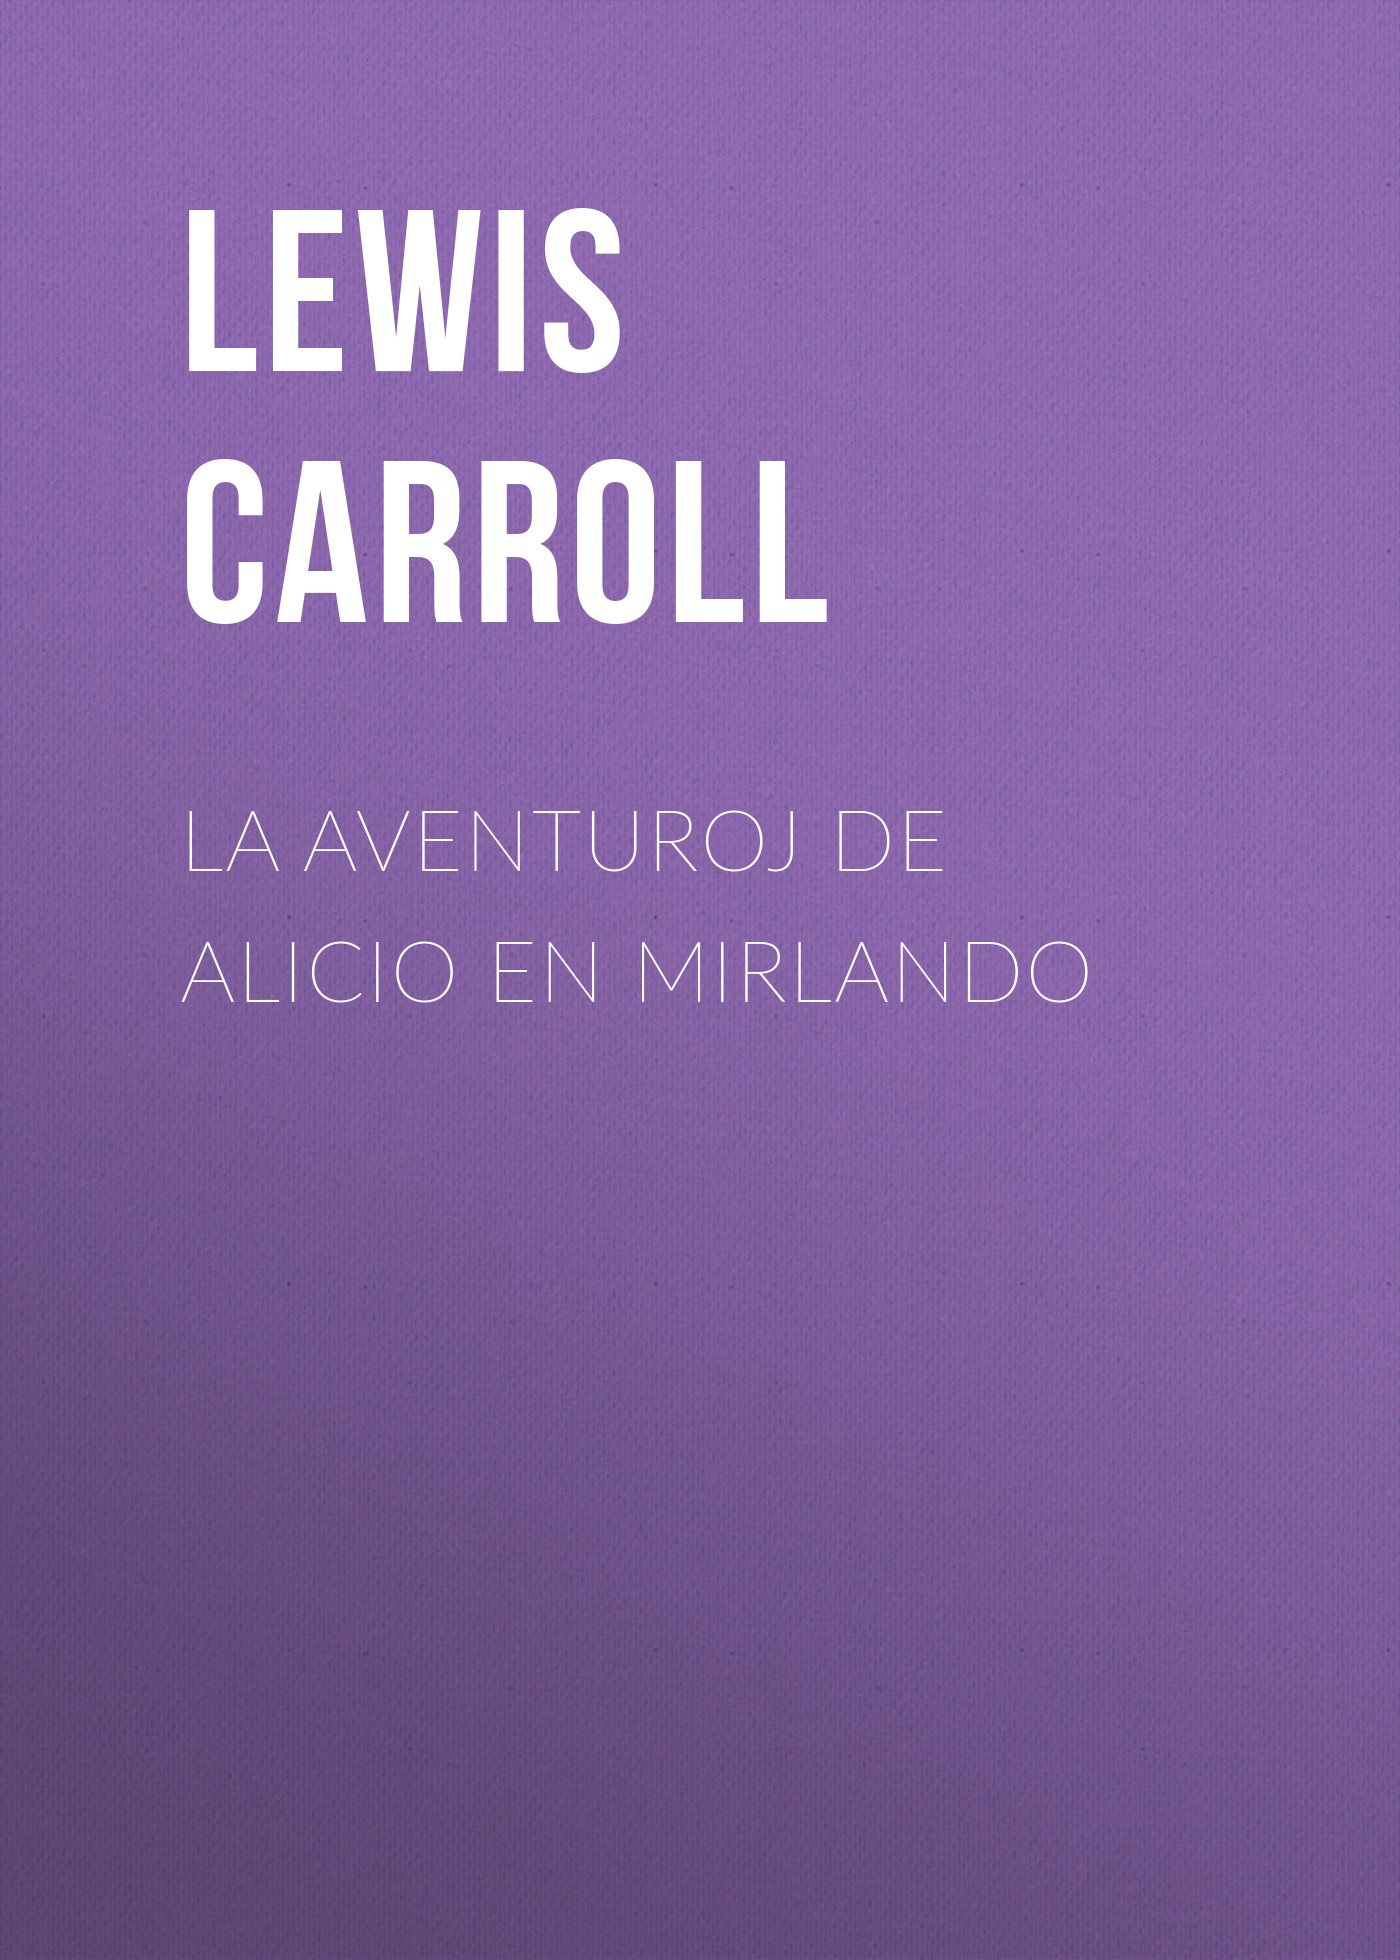 Книга La Aventuroj de Alicio en Mirlando из серии , созданная Lewis Carroll, может относится к жанру Зарубежная старинная литература, Зарубежная классика, Зарубежные детские книги. Стоимость электронной книги La Aventuroj de Alicio en Mirlando с идентификатором 25021419 составляет 0 руб.